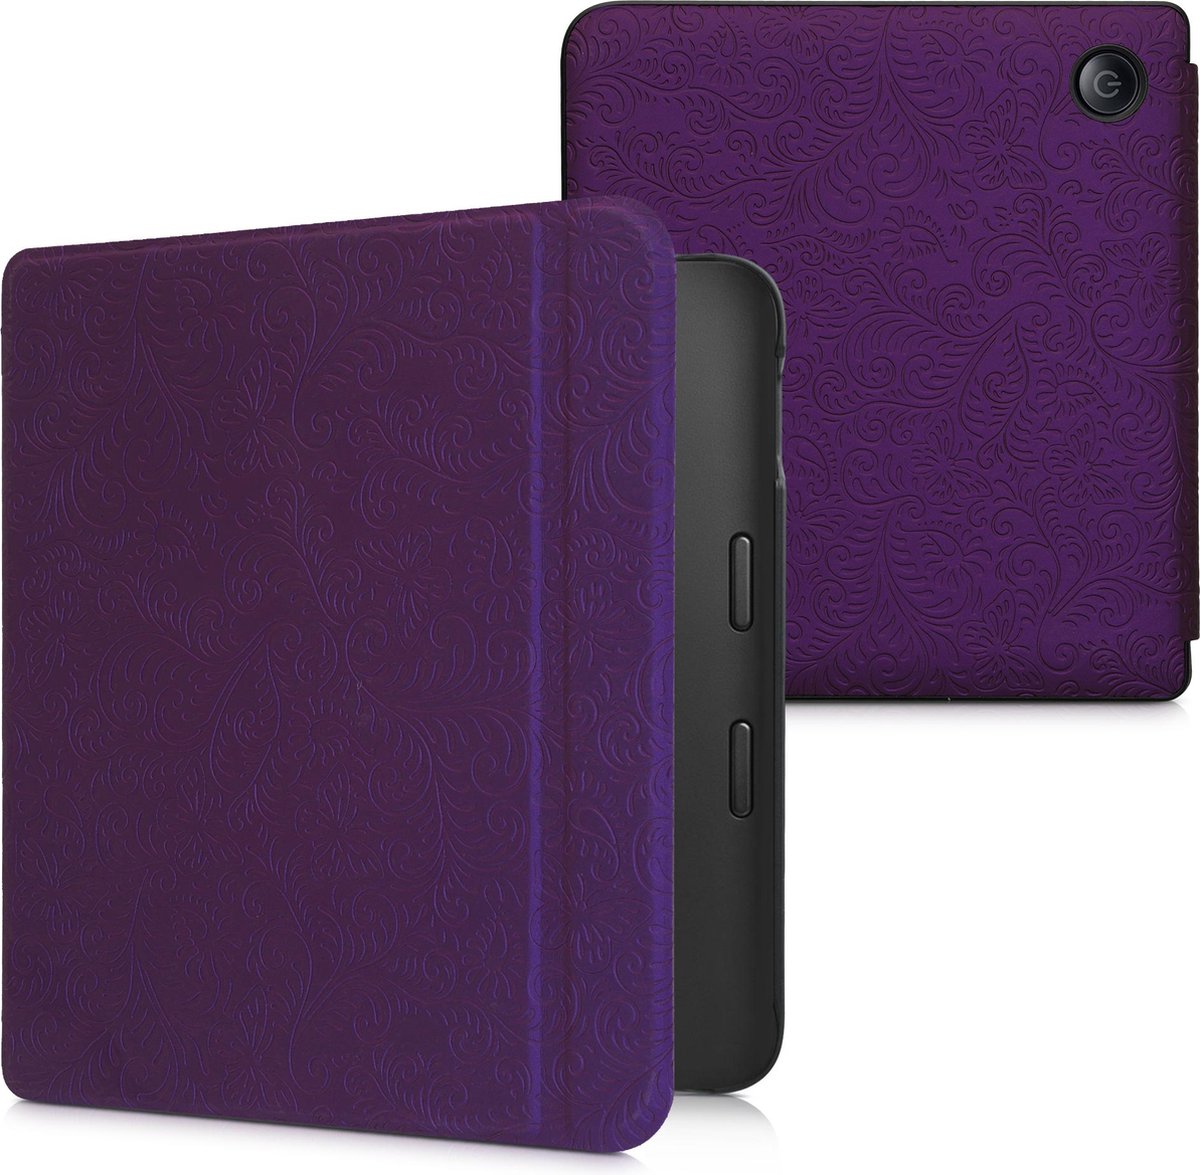 Étui kwMobile compatible avec la Libra 2 de Kobo - Étui folio en cuir de  polyuréthane pour liseuse de style livre - Violet